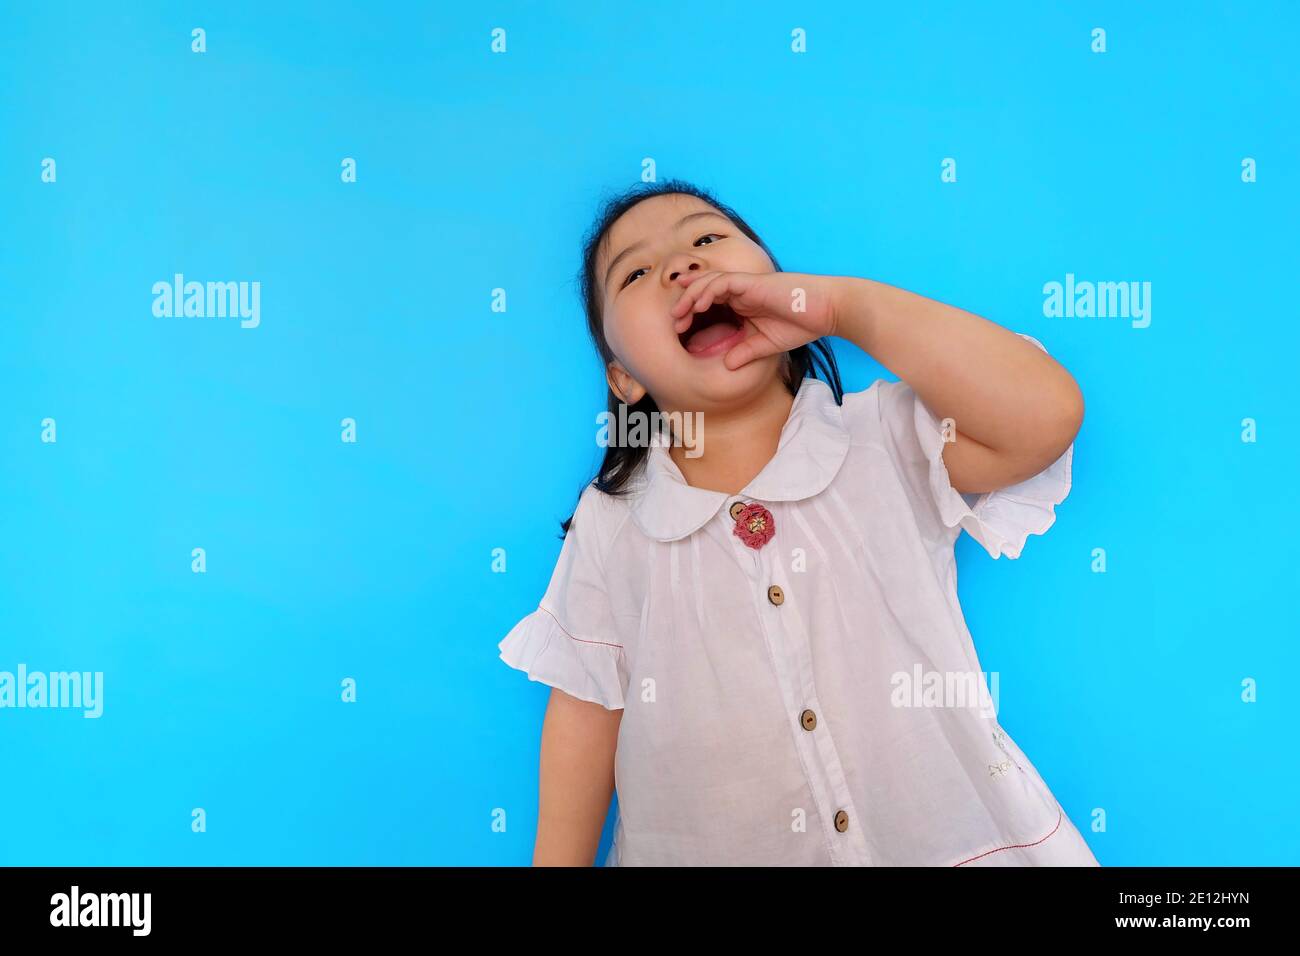 Une jeune fille asiatique mignonne se sentant excitante, criant du haut de ses poumons avec sa bouche large ouverte et une paume près de sa bouche. Fond bleu clair Uni Banque D'Images